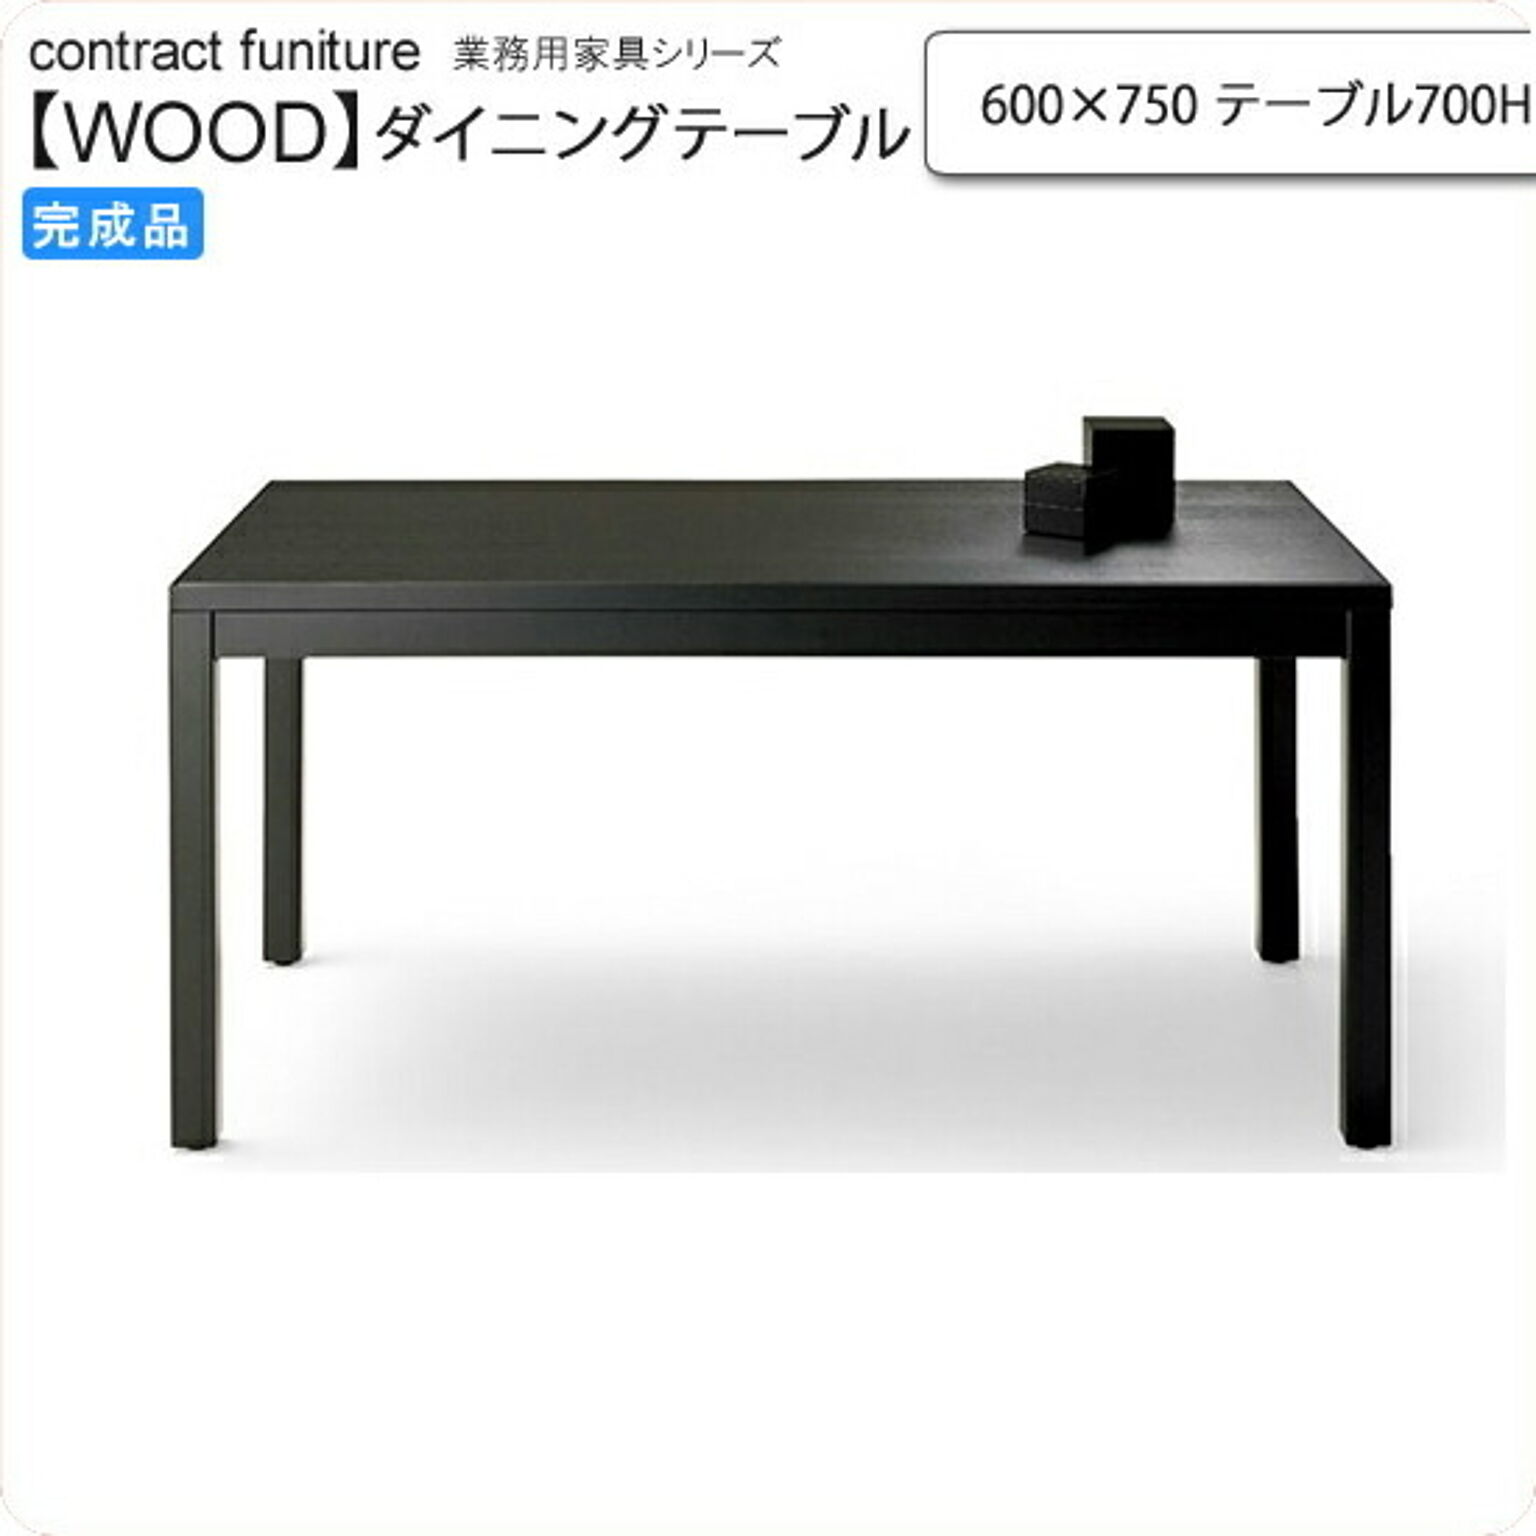 600×750 テーブル700H ダイニングテーブル 業務用家具：wood japaneseシリーズ★ トリミナ 受注生産 (和風)